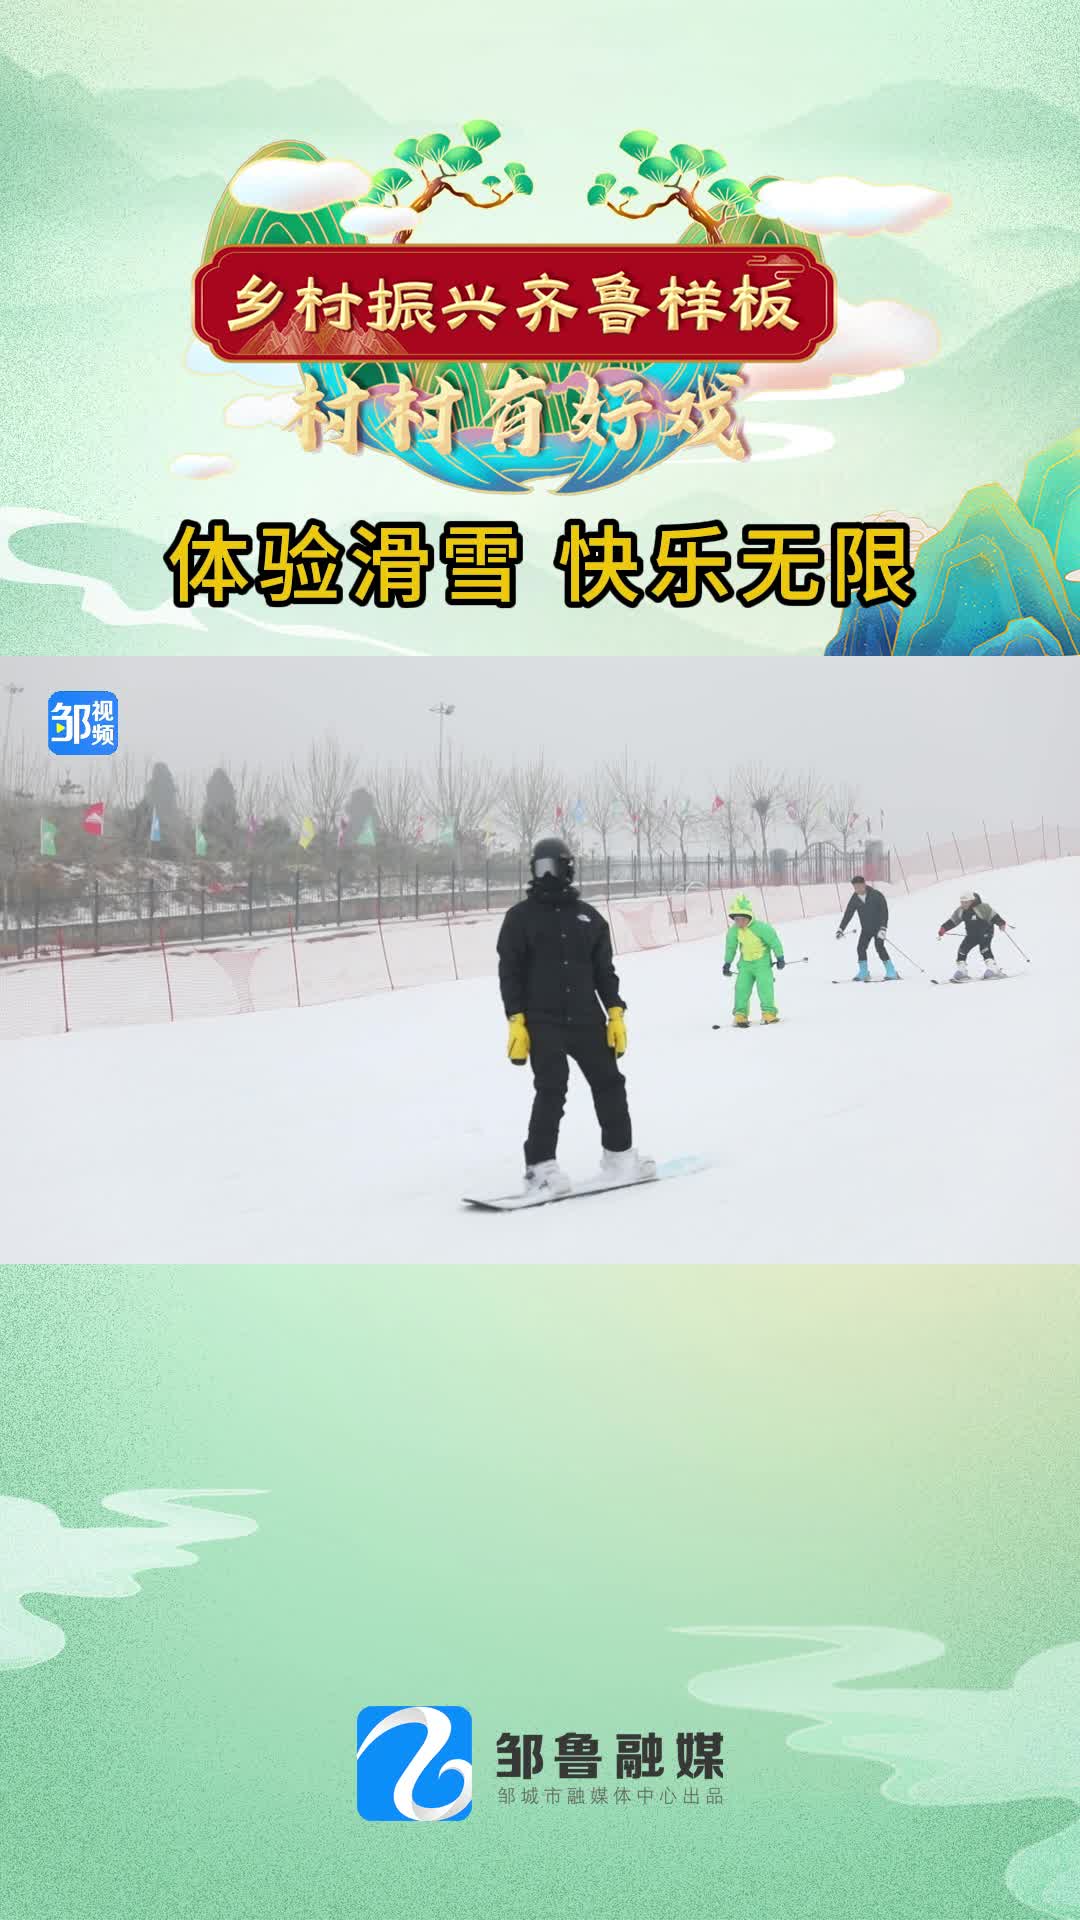 【邹视频·新闻】36秒|体验滑雪 快乐无限